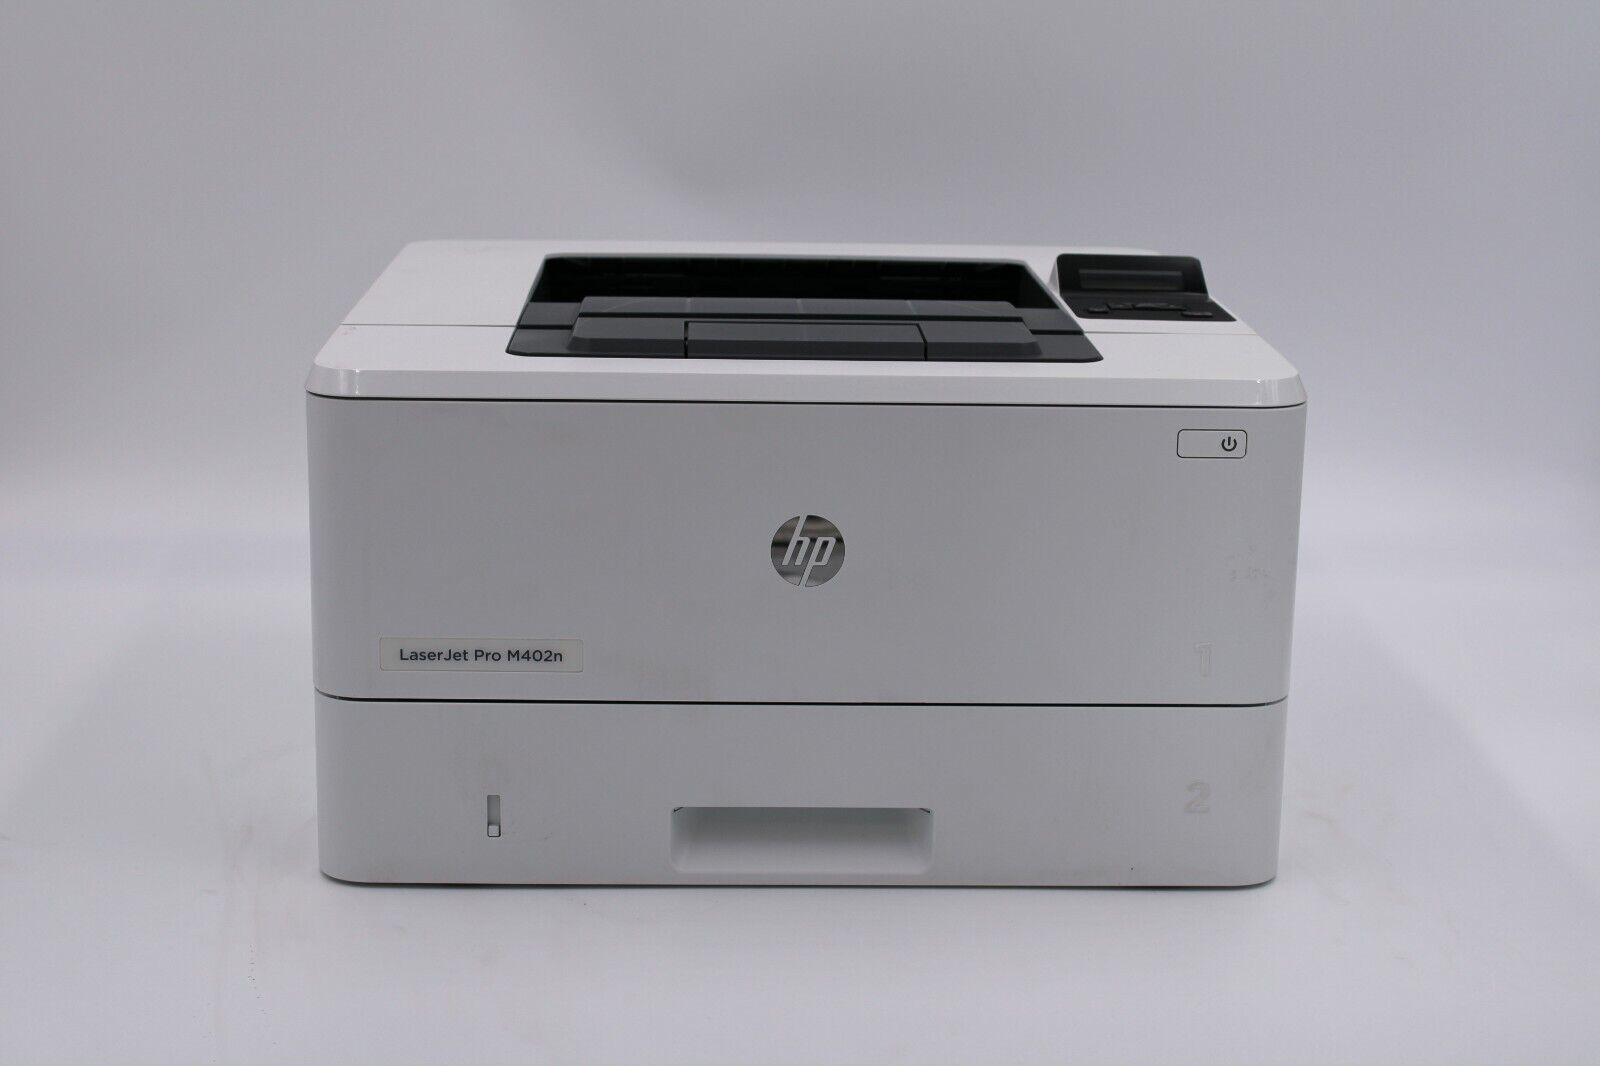 HP LaserJet Pro M402n Workgroup Monochrome Laser Printer No Toner TESTED